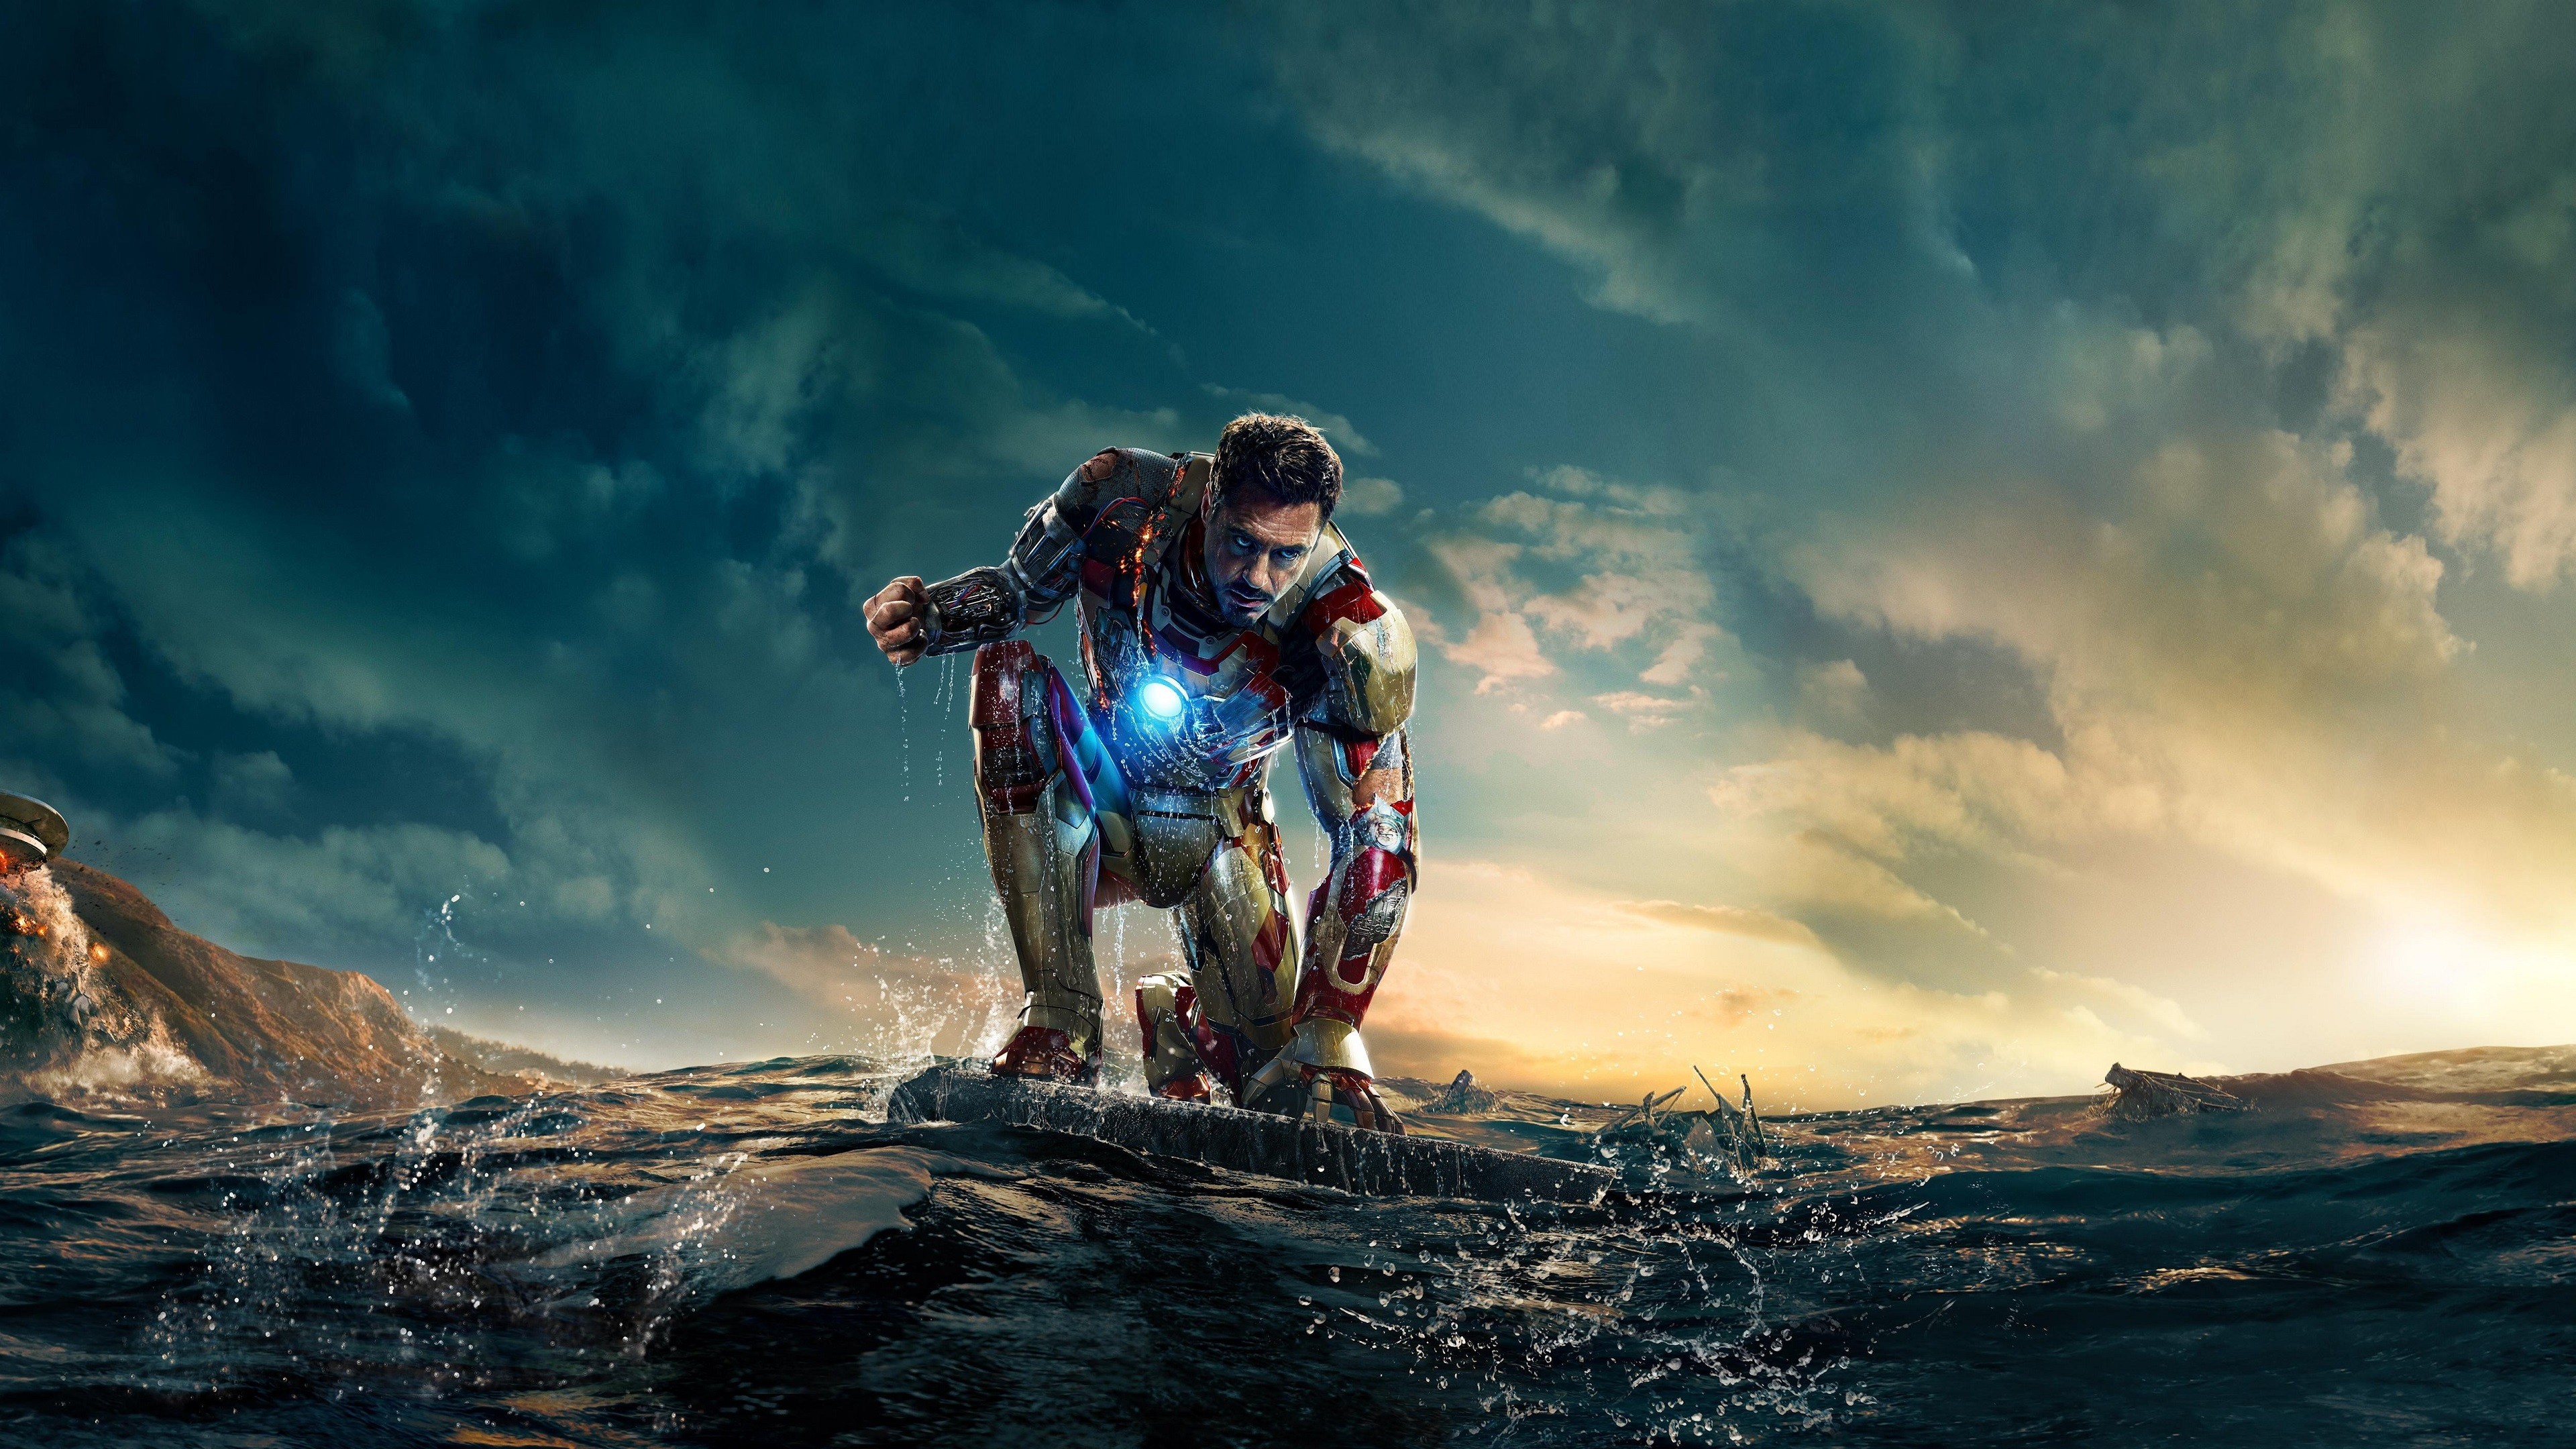 Robert Downey Jr As Iron Man 4k Wallpaper